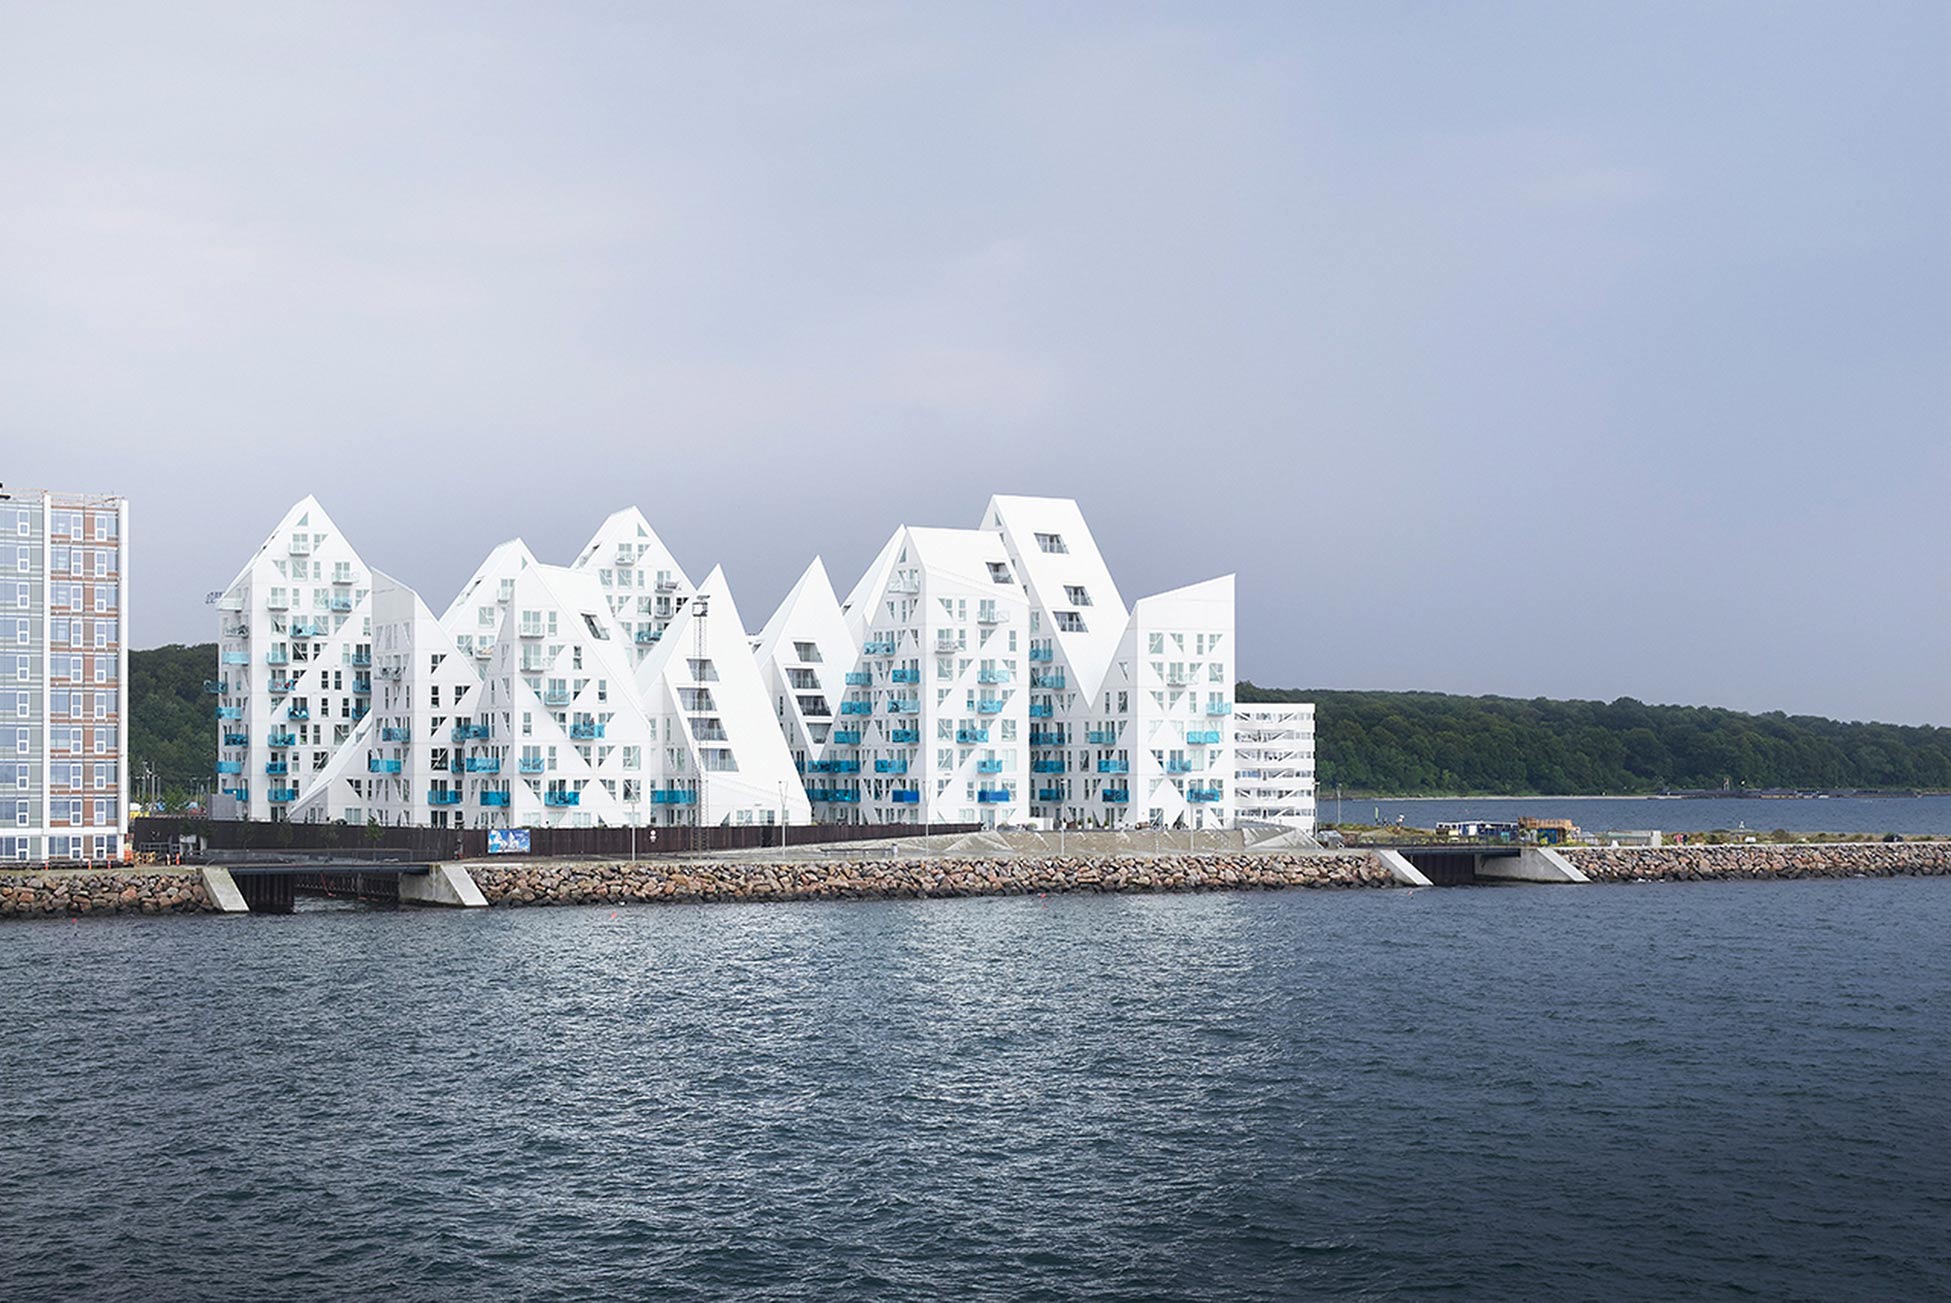 Dự án nhà ở Isbjerget ở Aarhus , Đan Mạch lấy cảm hứng từ những tảng băng trôi